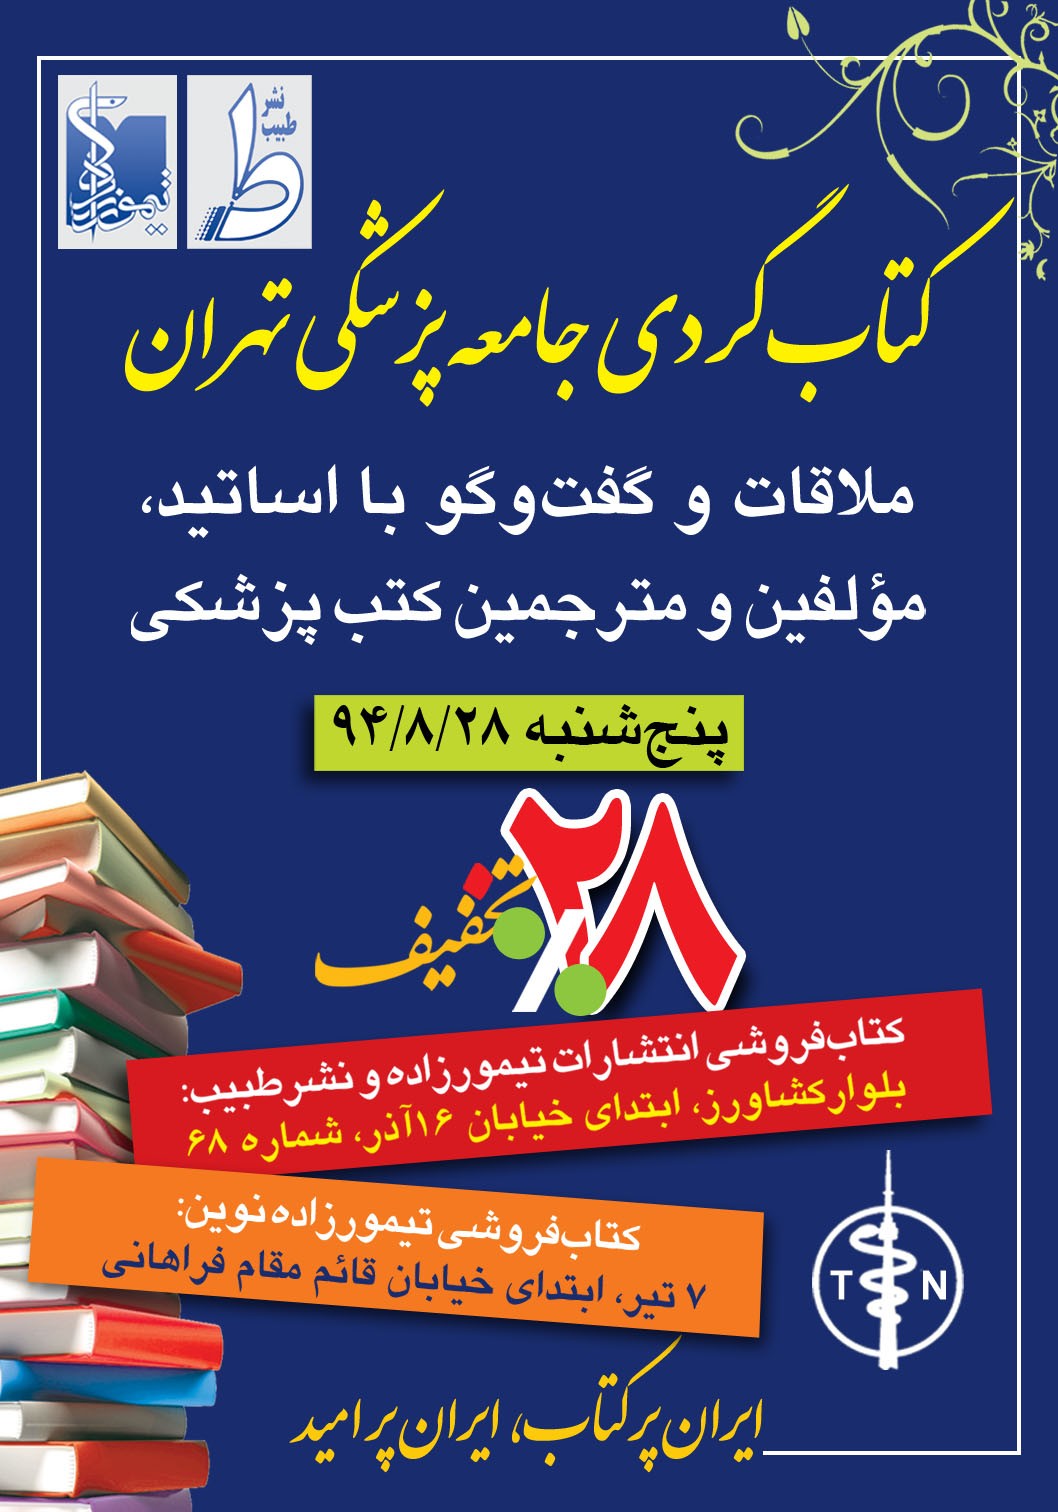 انتشارات تیمورزاده فردا میزبان کتابگردی جامعه پزشکی است